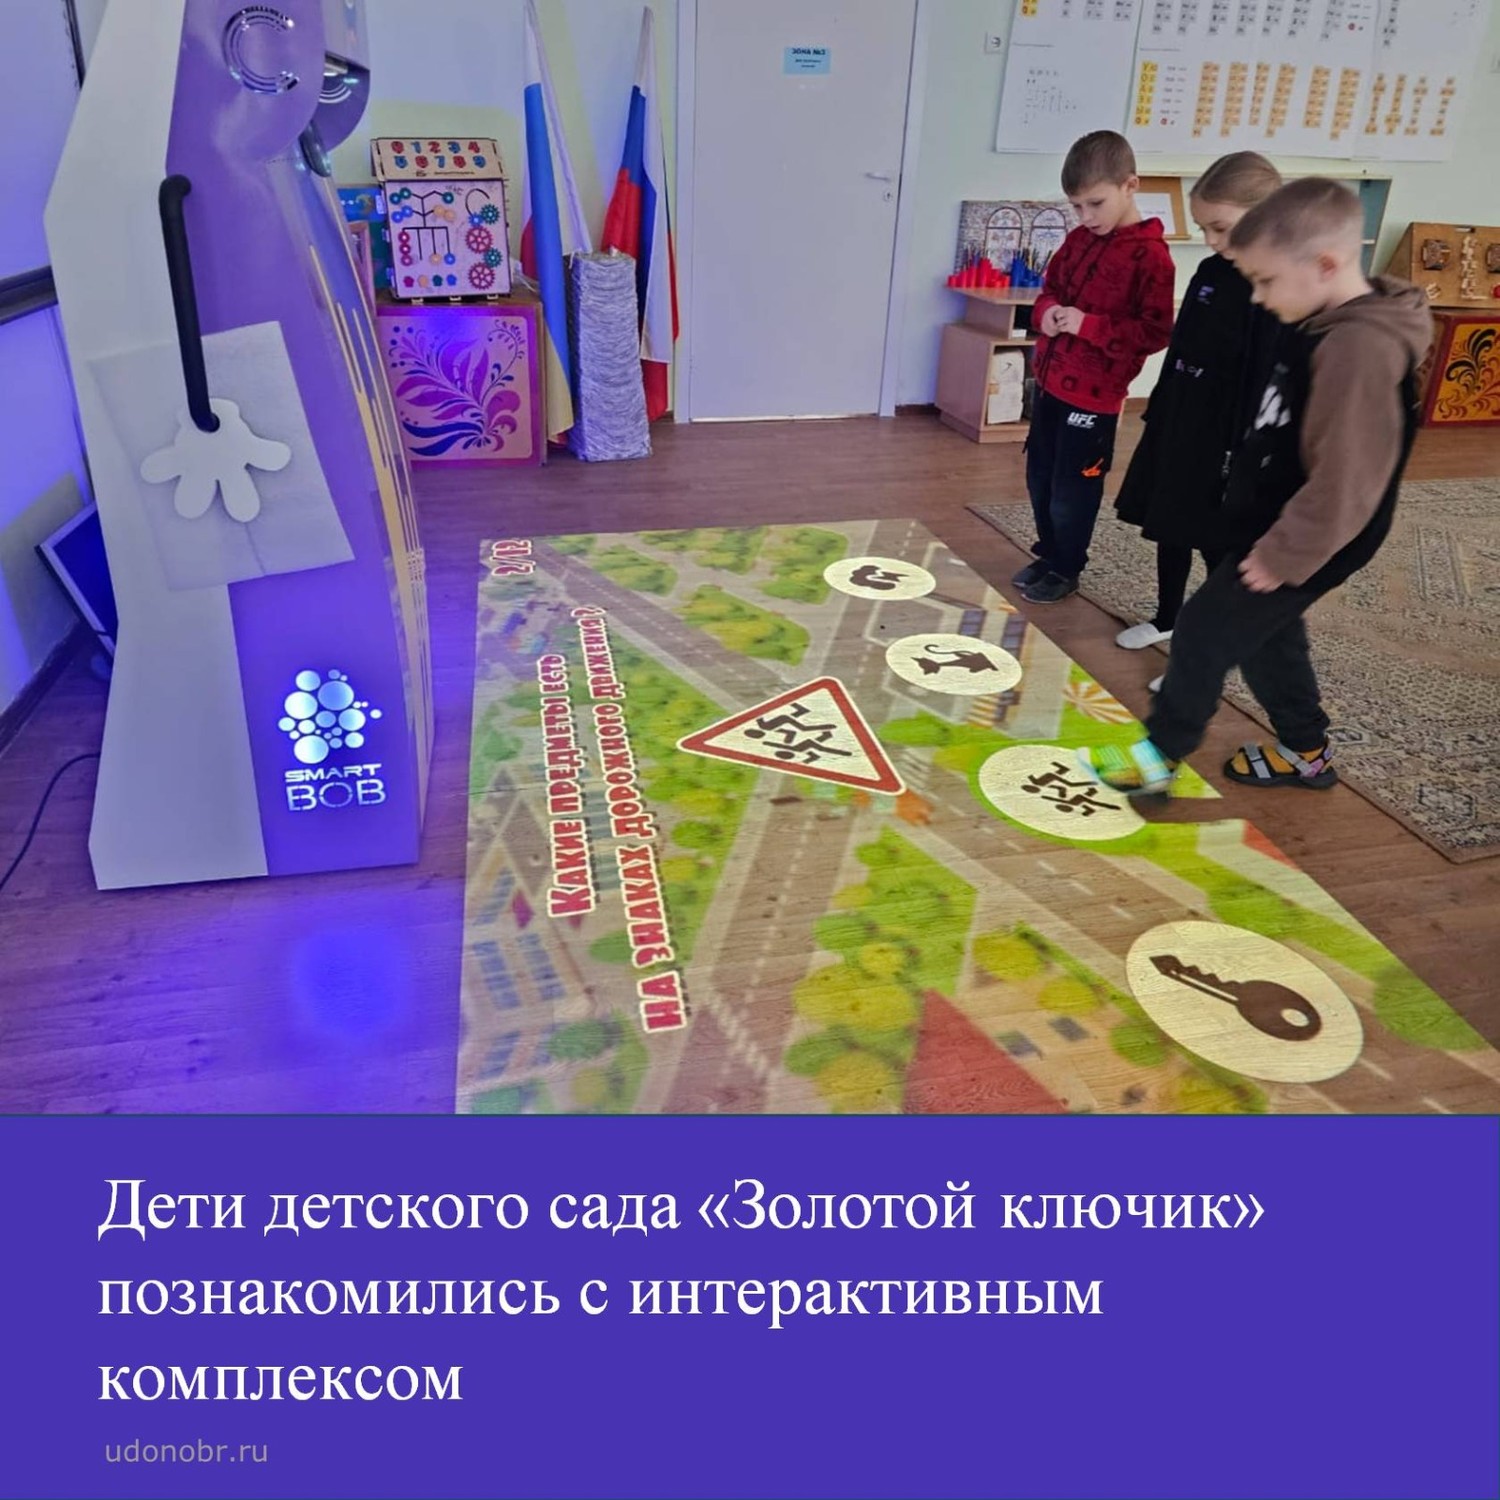 Дети детского сада «Золотой ключик» познакомились с интерактивным комплексом